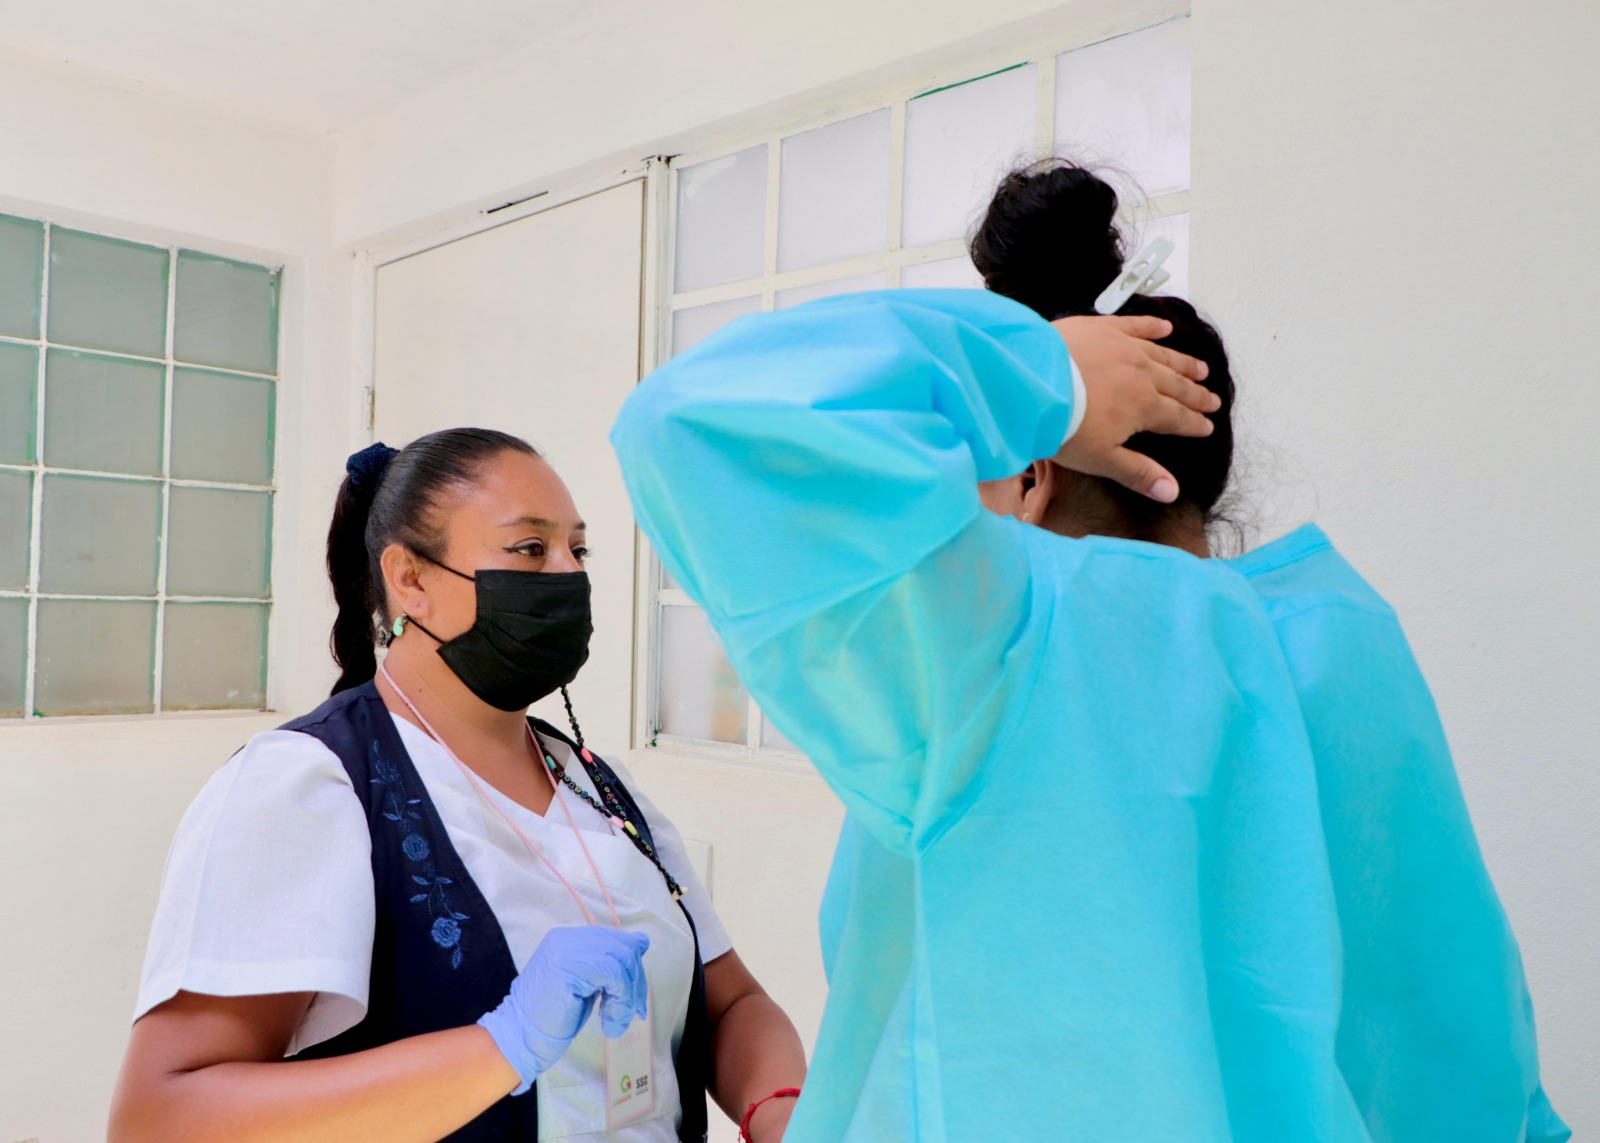 Se han visitado seis Centros Penitenciarios ubicados en los municipios de Ecatepec, Tlalnepantla, Chalco, Nezahualcóyotl (Bordo y Sur) y Almoloya de Juárez, atendiendo a más de 800 mujeres privadas de su libertad.